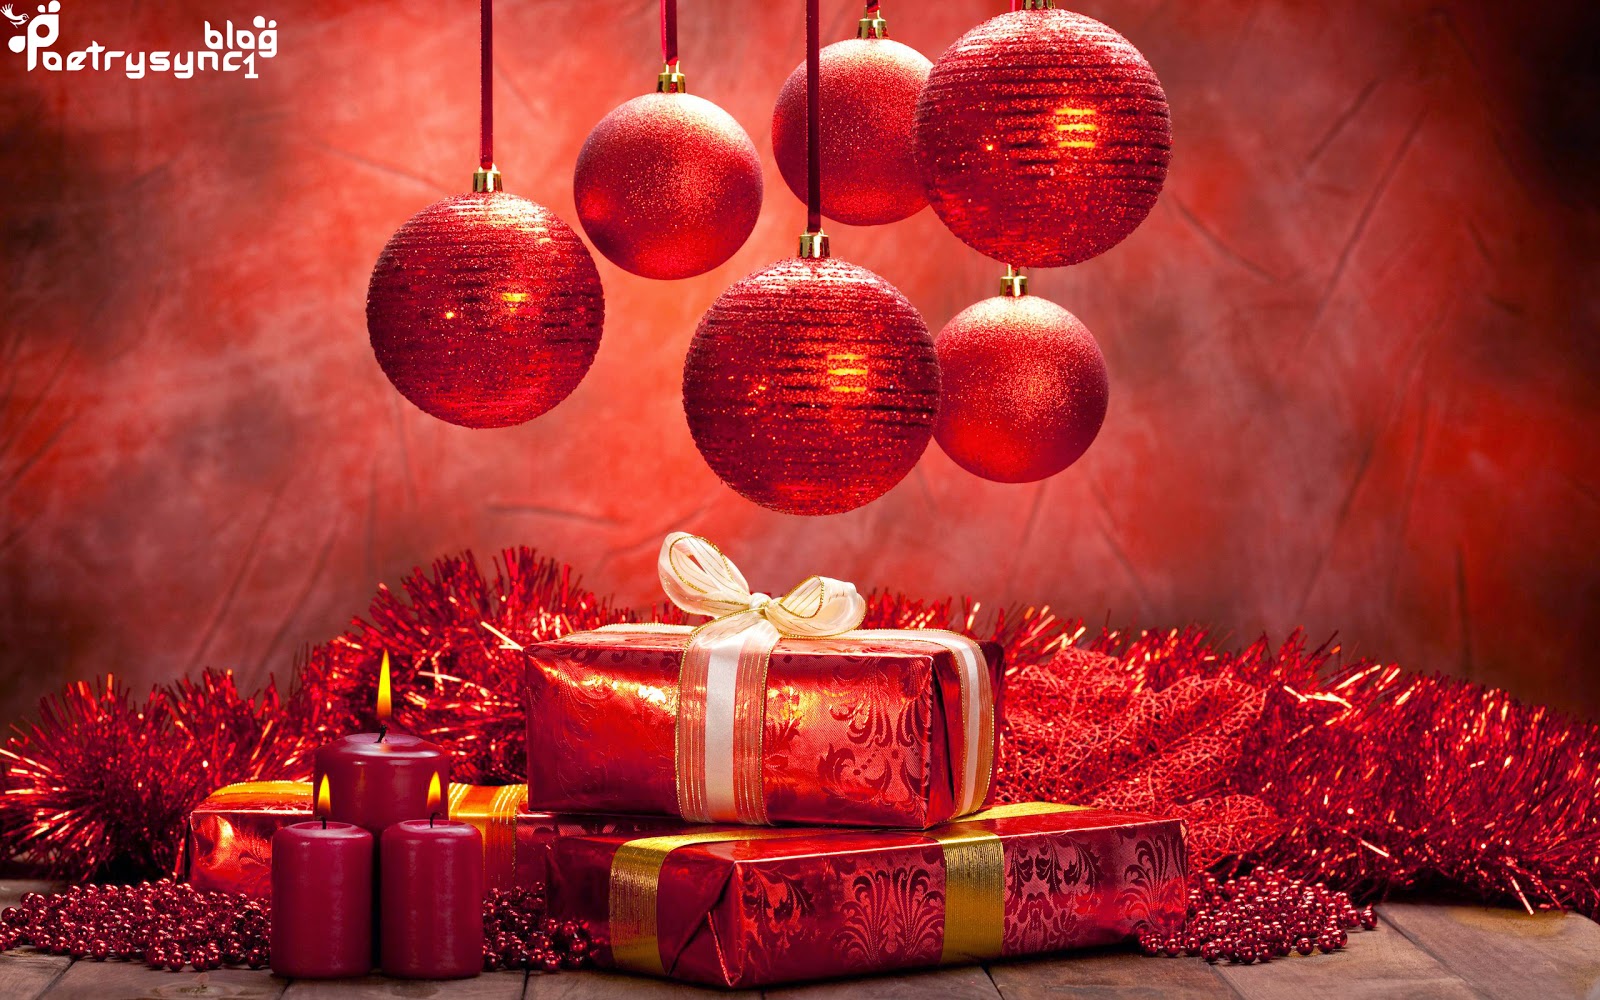 クリスマス願い壁紙,クリスマスの飾り,赤,クリスマスオーナメント,クリスマス・イブ,クリスマス